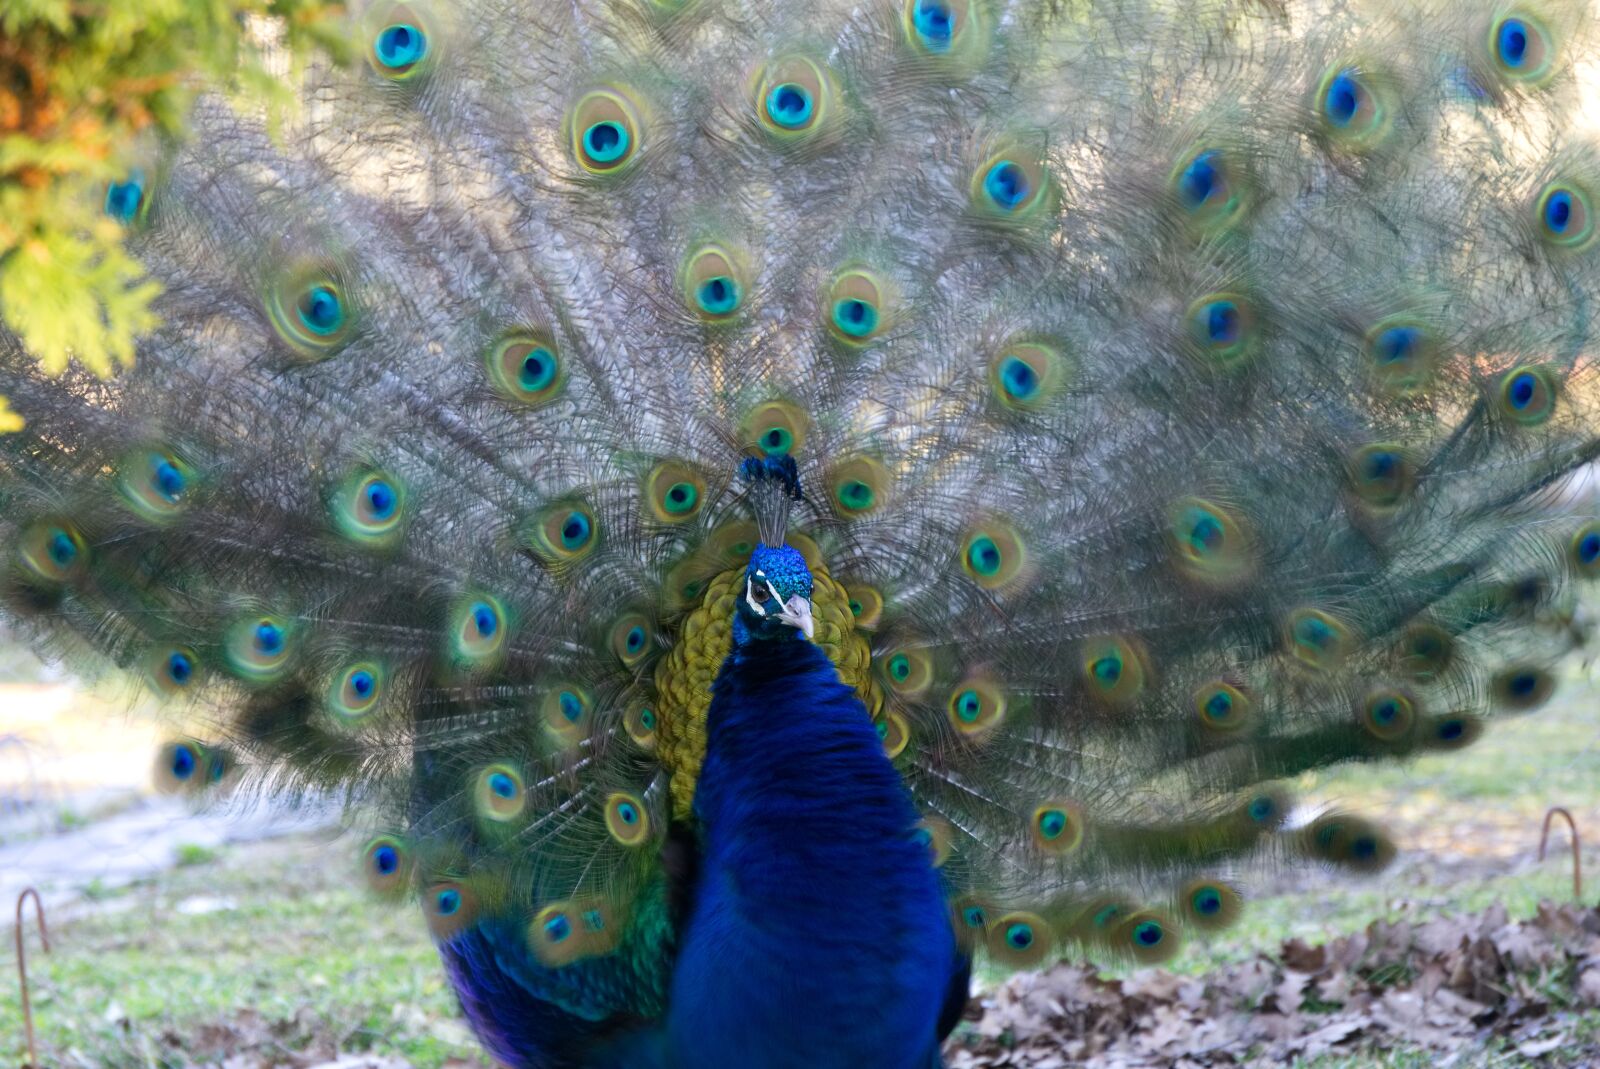 Sony a6000 sample photo. Peacock, bird, bird peacock photography